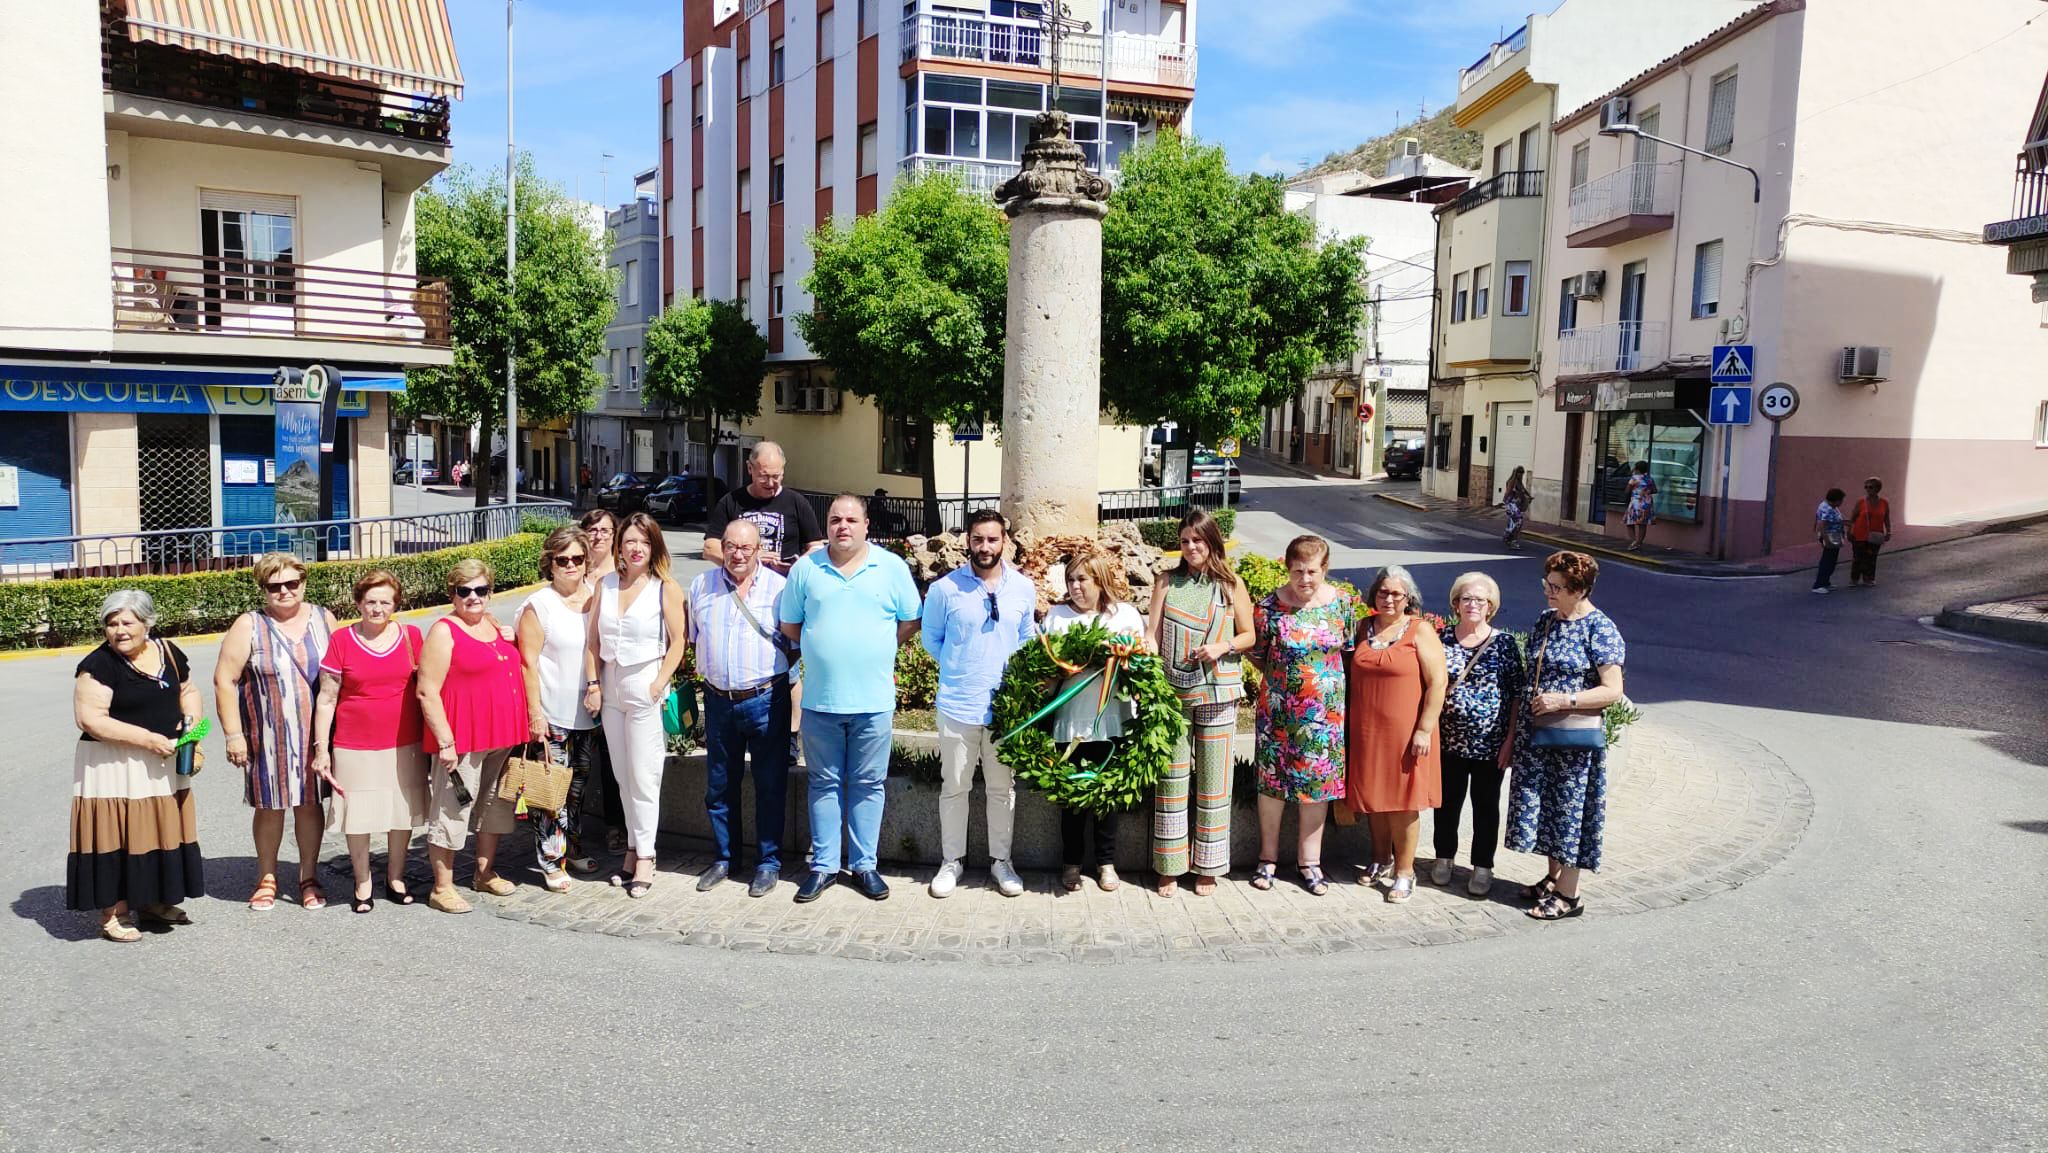 ASEM, acompaña al barrio de la Cruz del Lloro en sus fiestas vecinales 